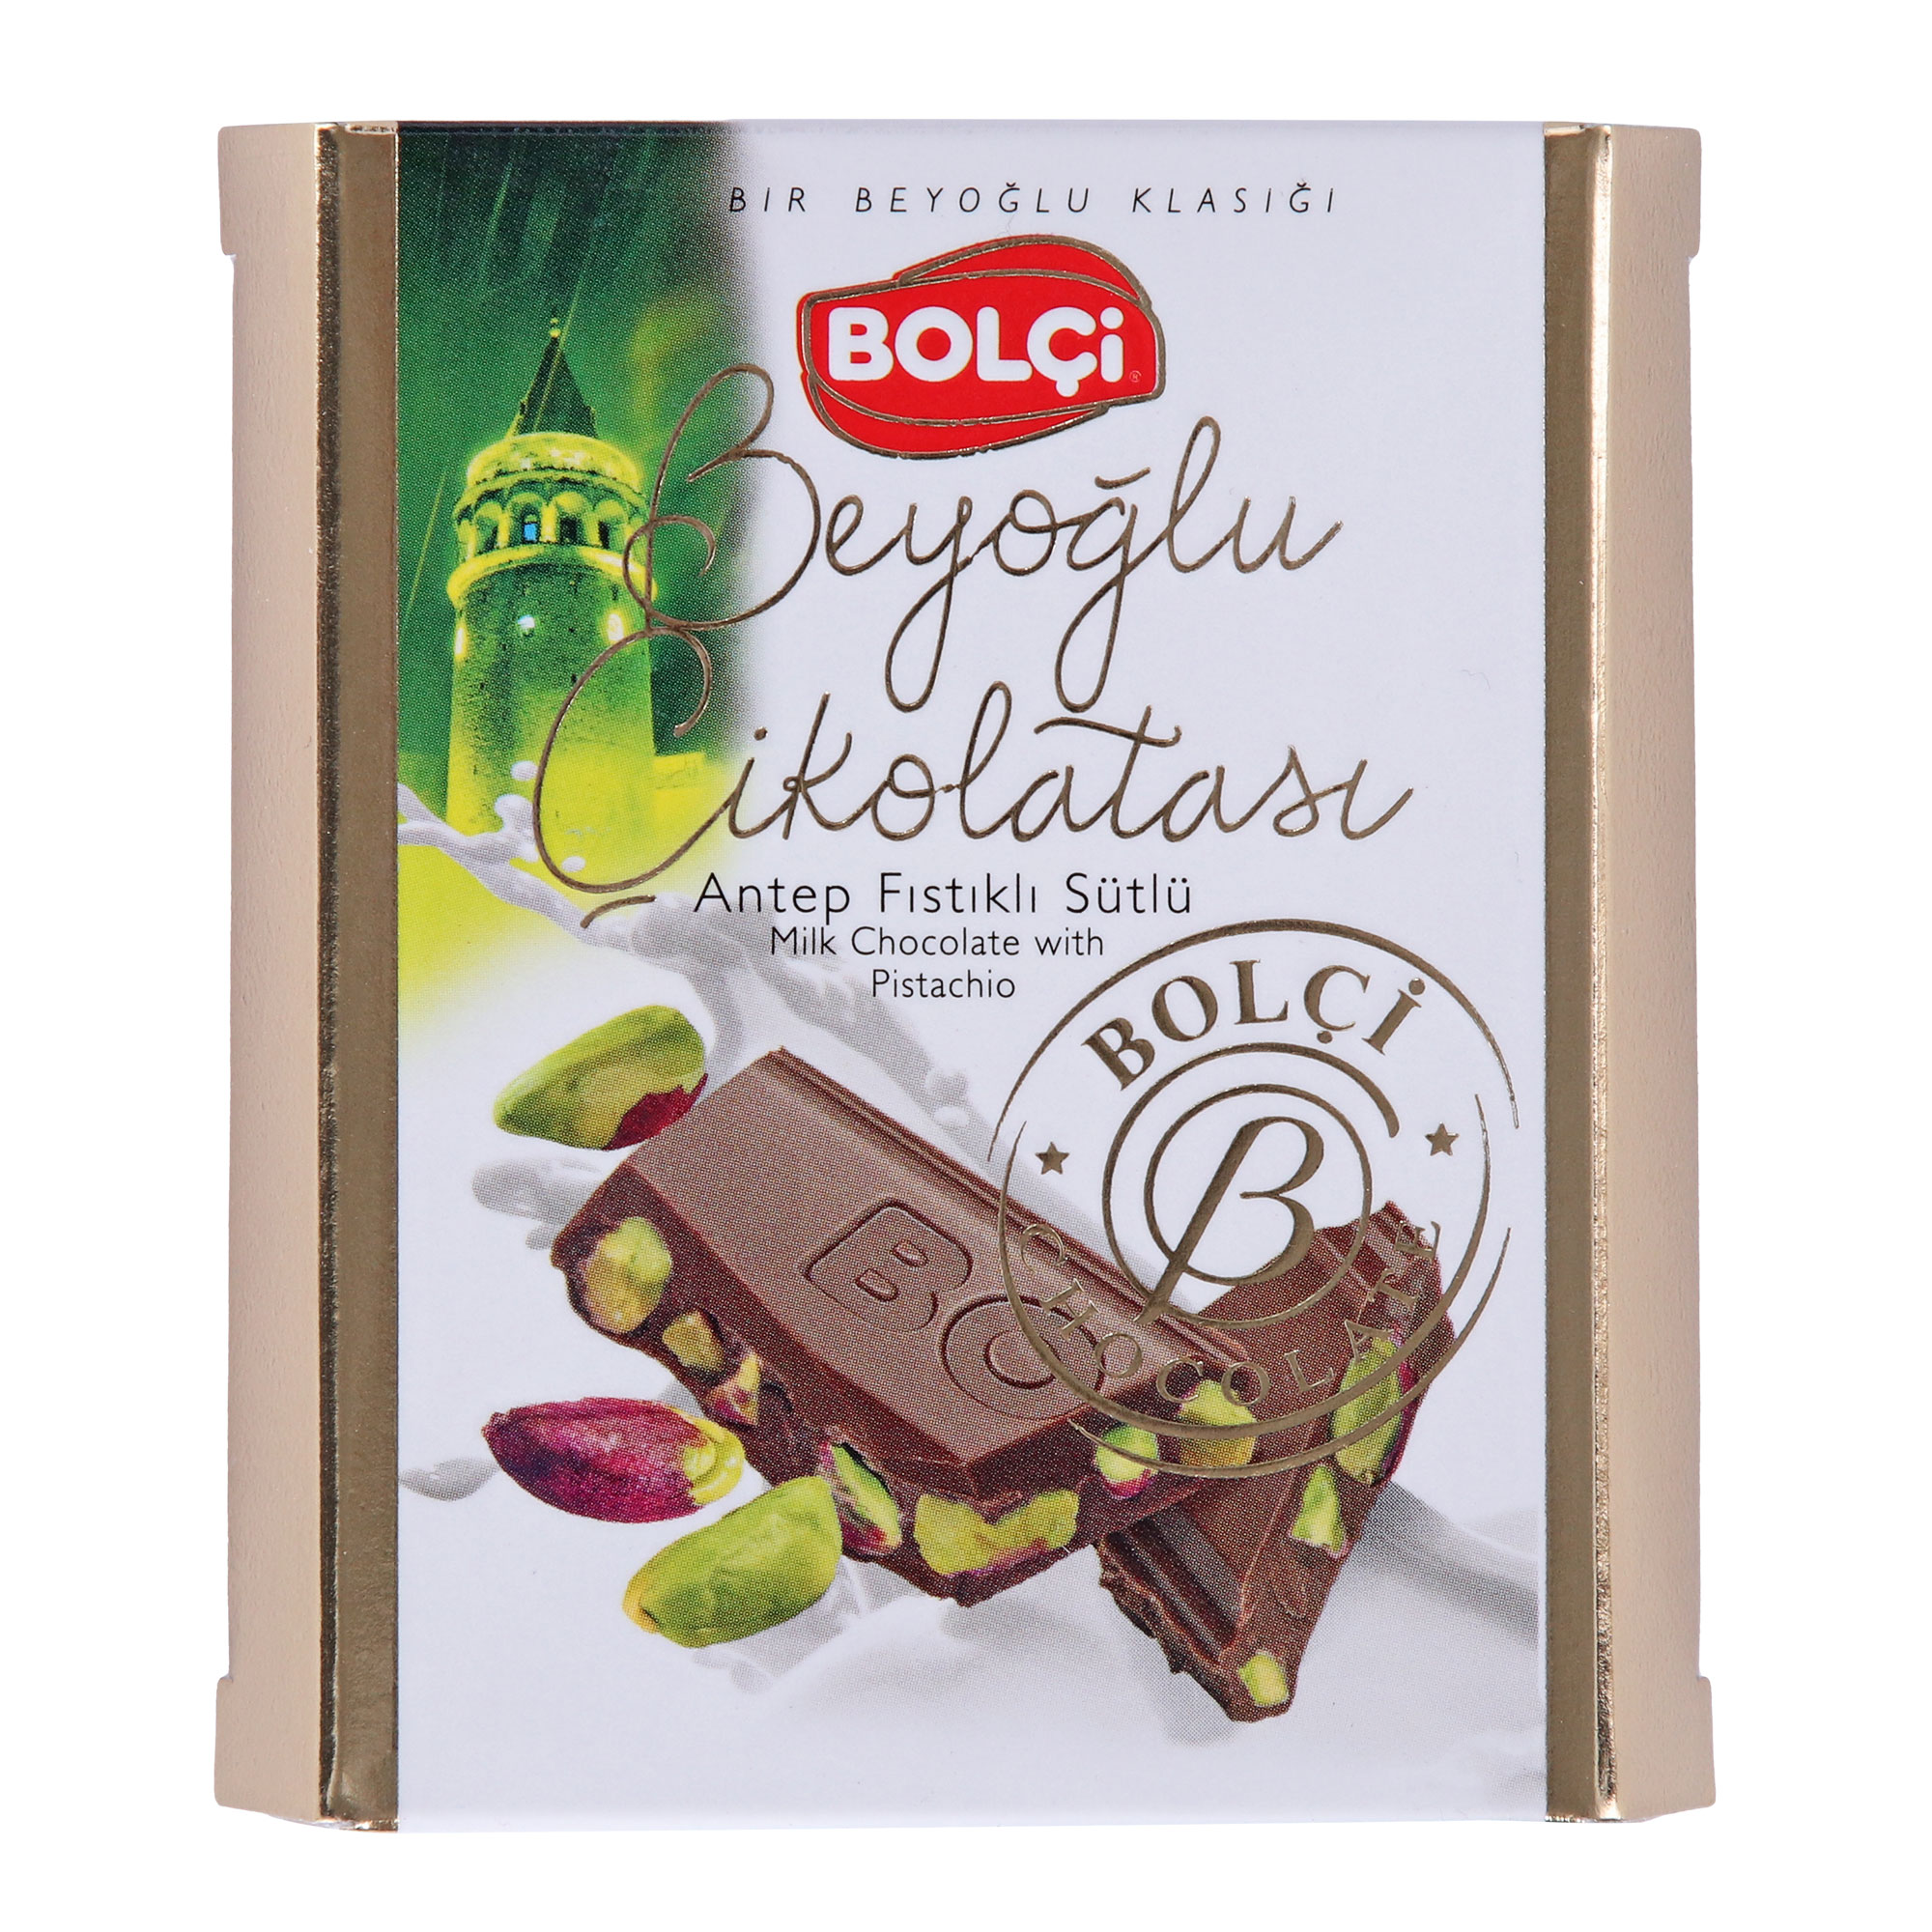 Молочный шоколад Bolci с цельной фисташкой, 60 г шоколад славянка особый молочный 90 г